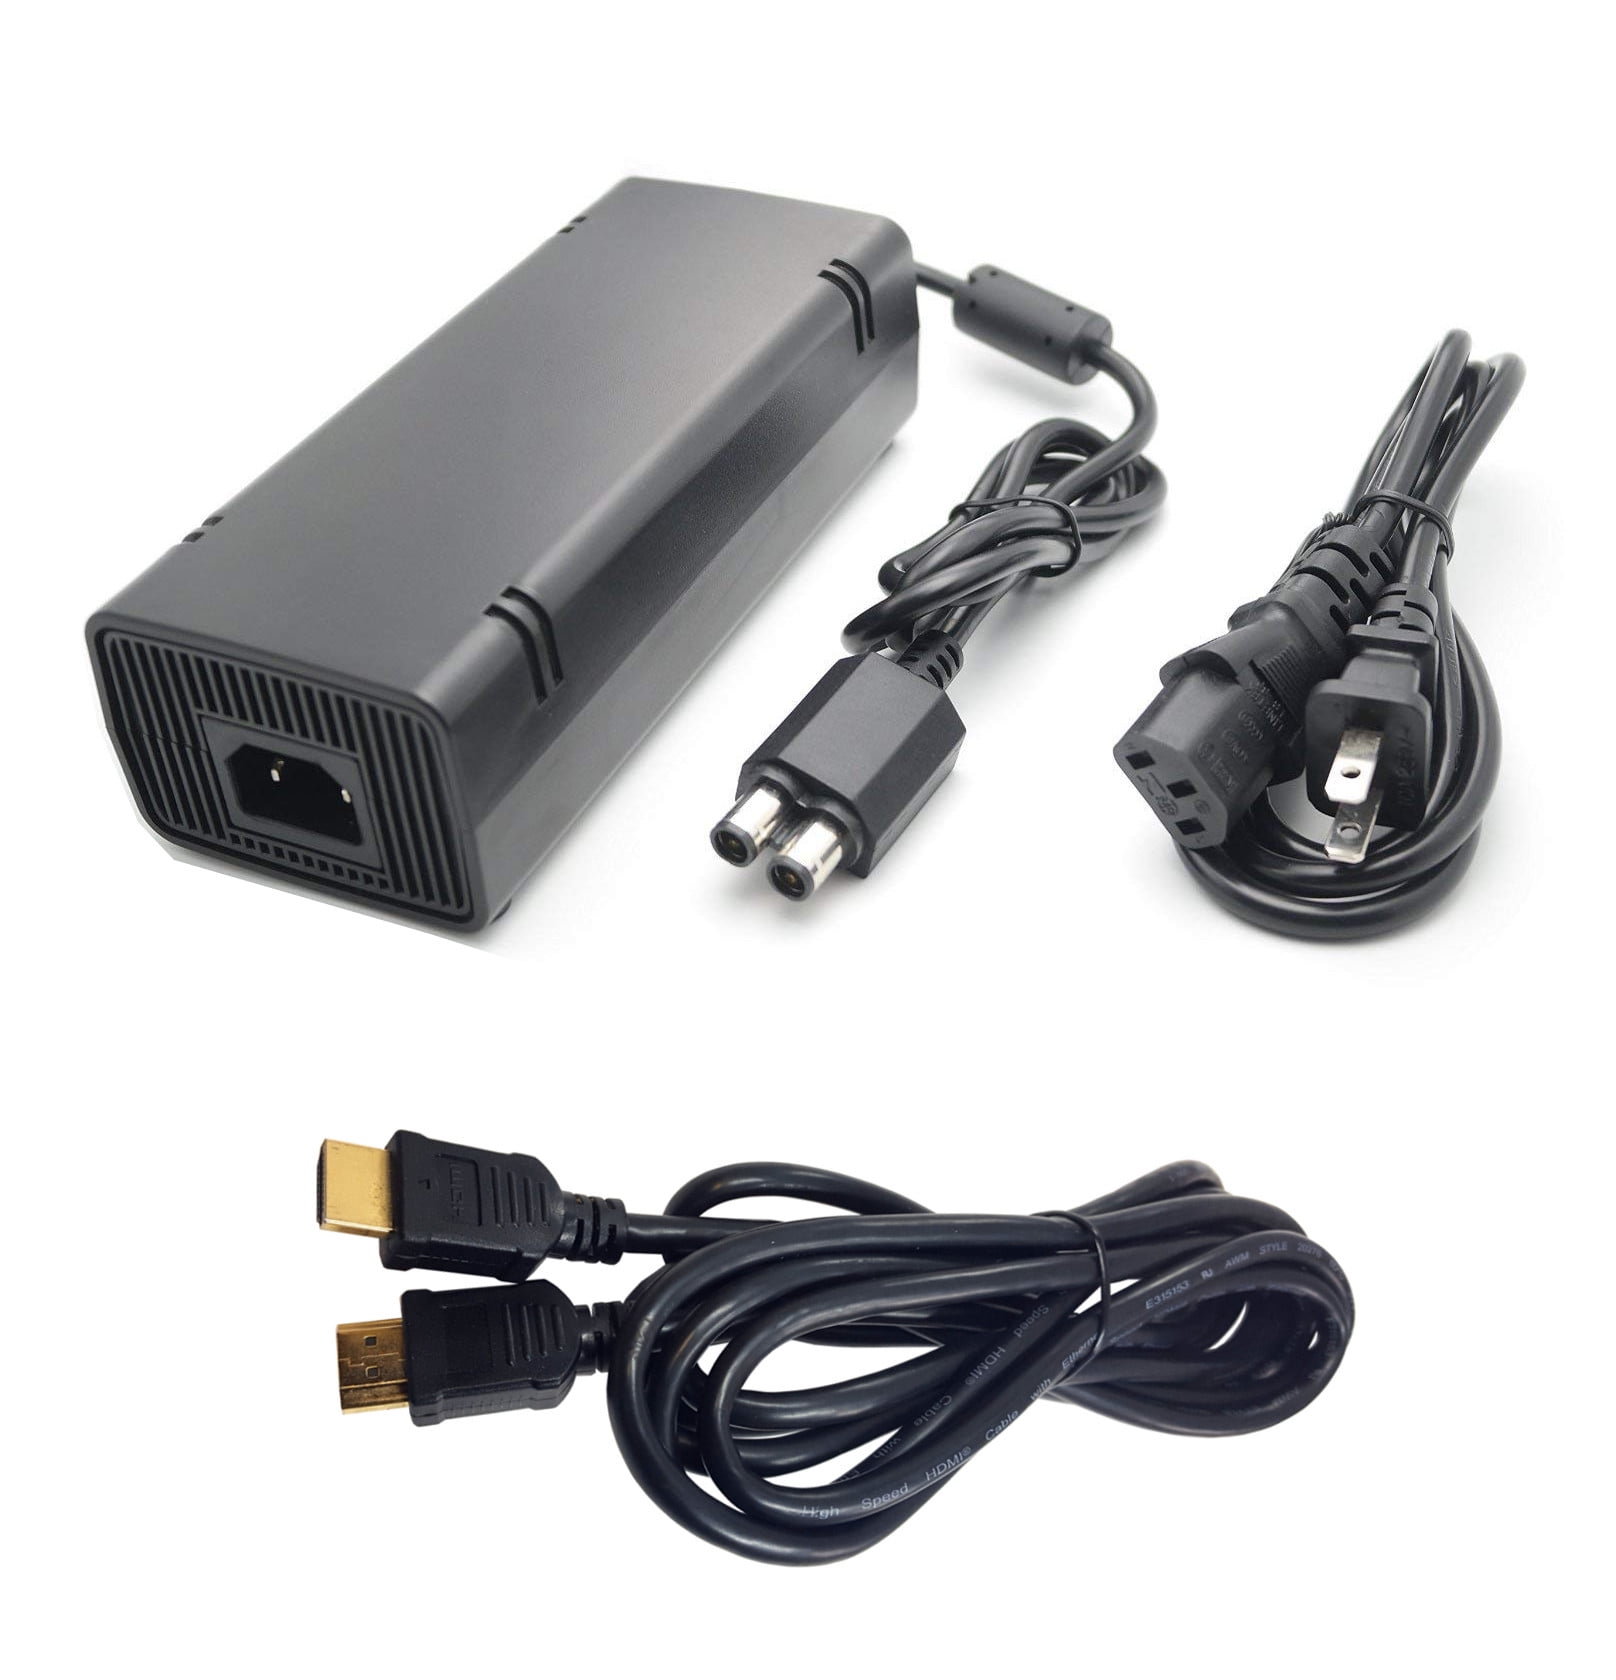 Microsoft Xbox 360 E 250GB Video Gaming Console Black With HDMI